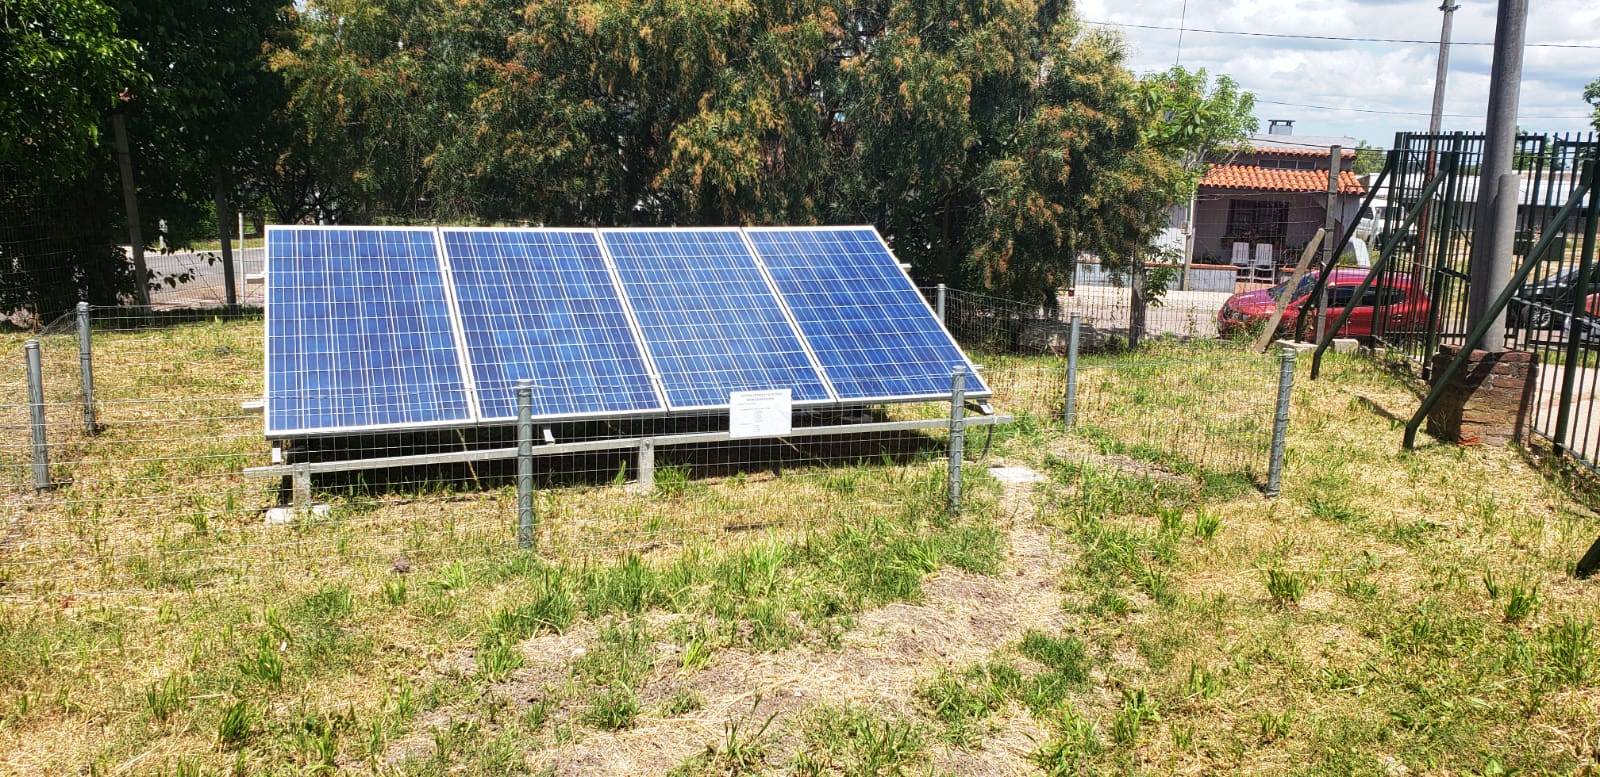 Equipo fotovoltaico ubicado en el predio del liceo.